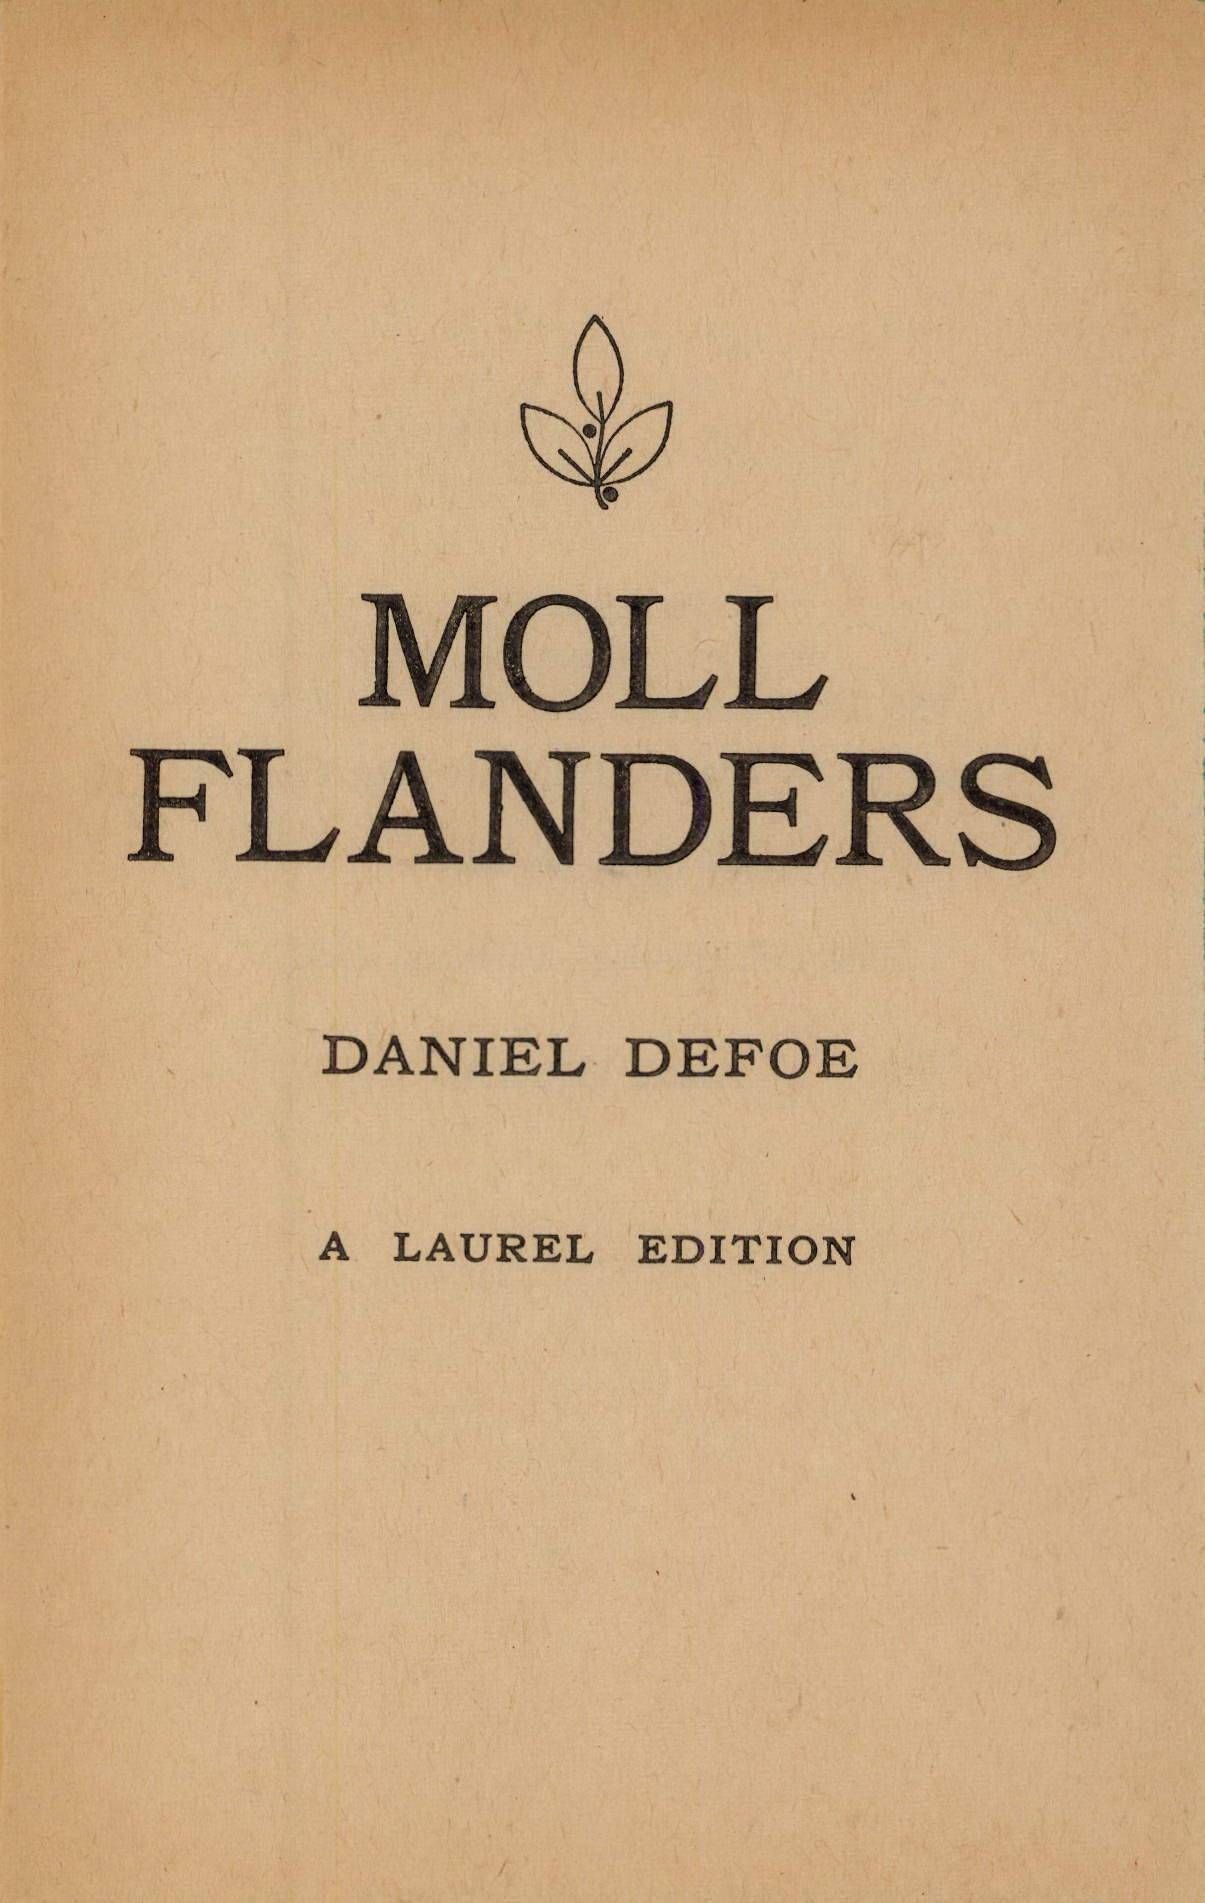 Moll Flanders by Daniel Defoe page 003.jpg